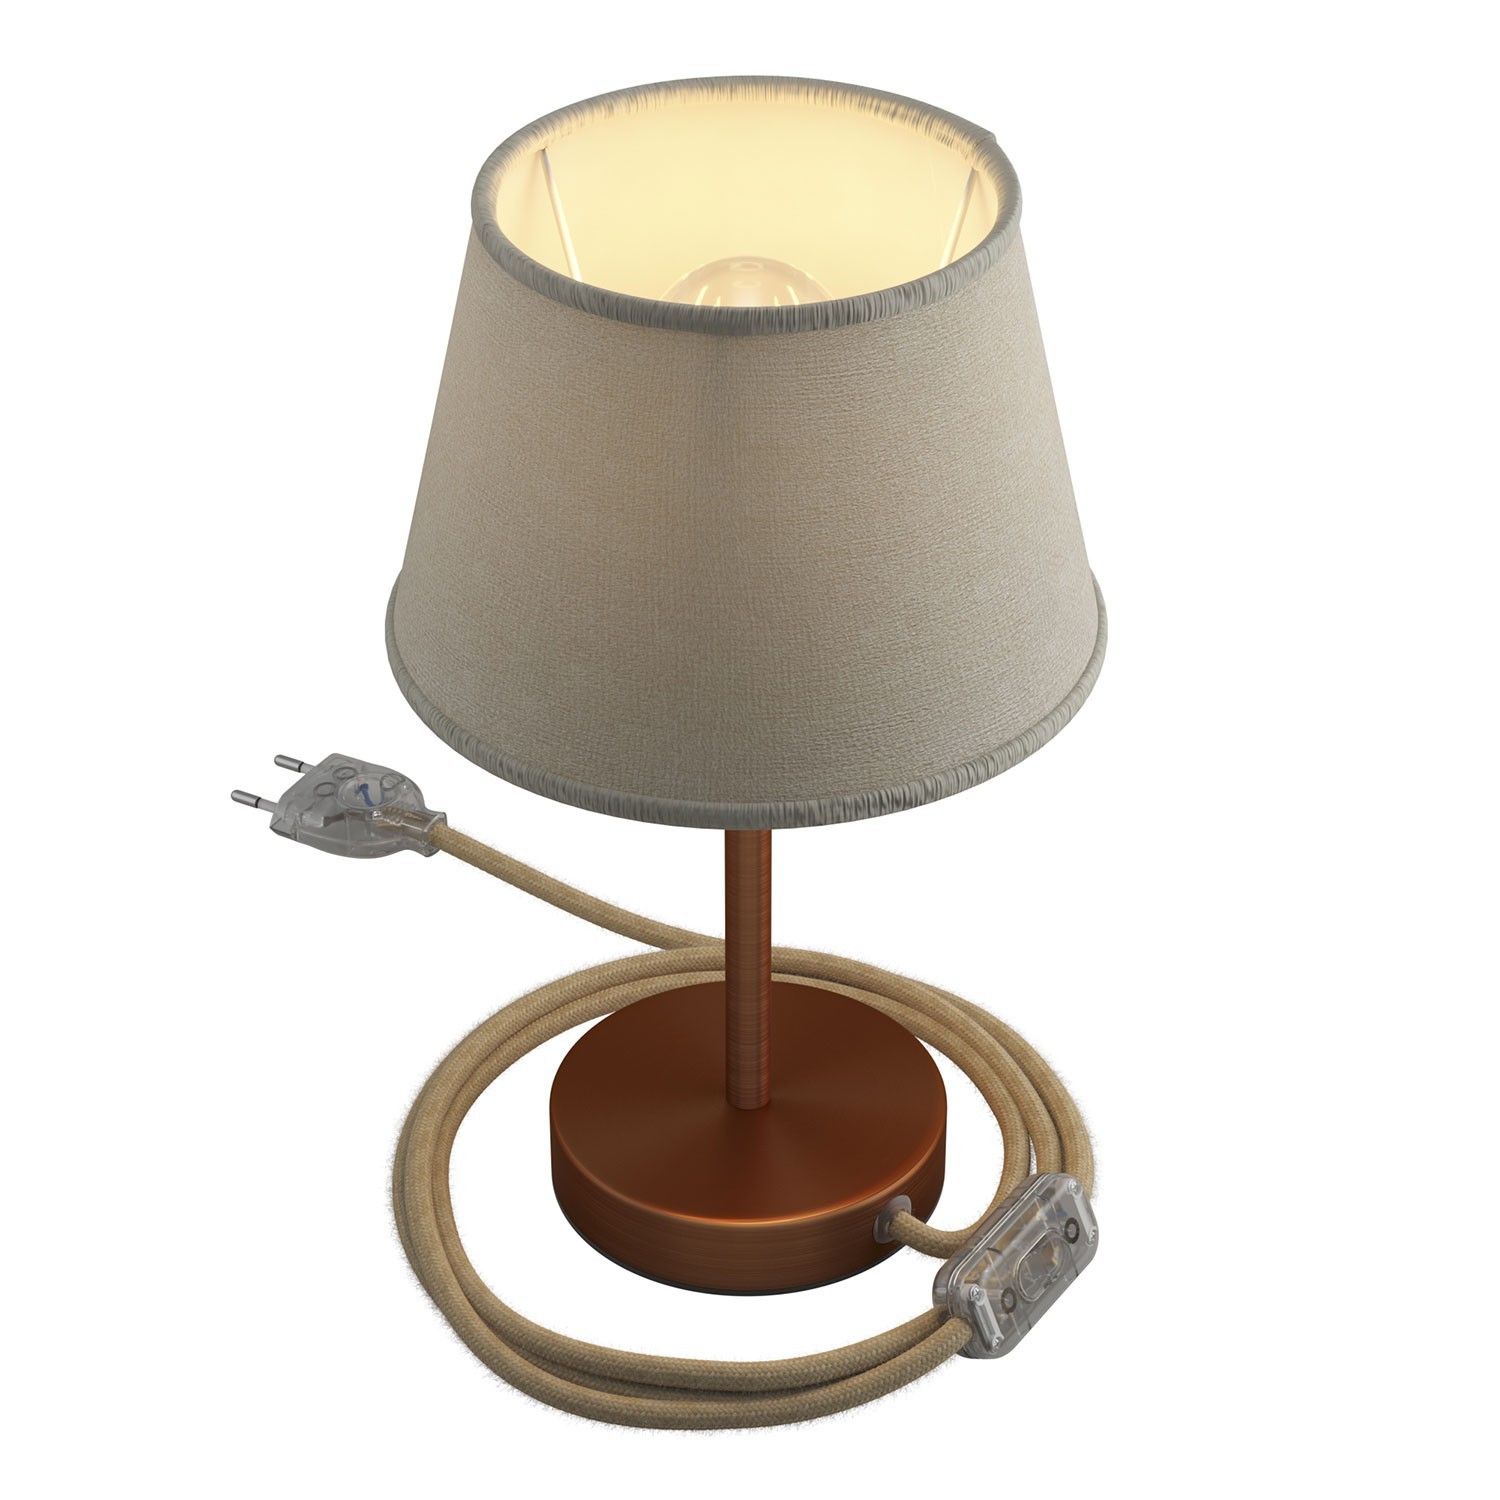 Alzaluce mit Lampenschirm Impero, Tischlampe aus Metall mit 2-poligem Stecker, Kabel und Schalter